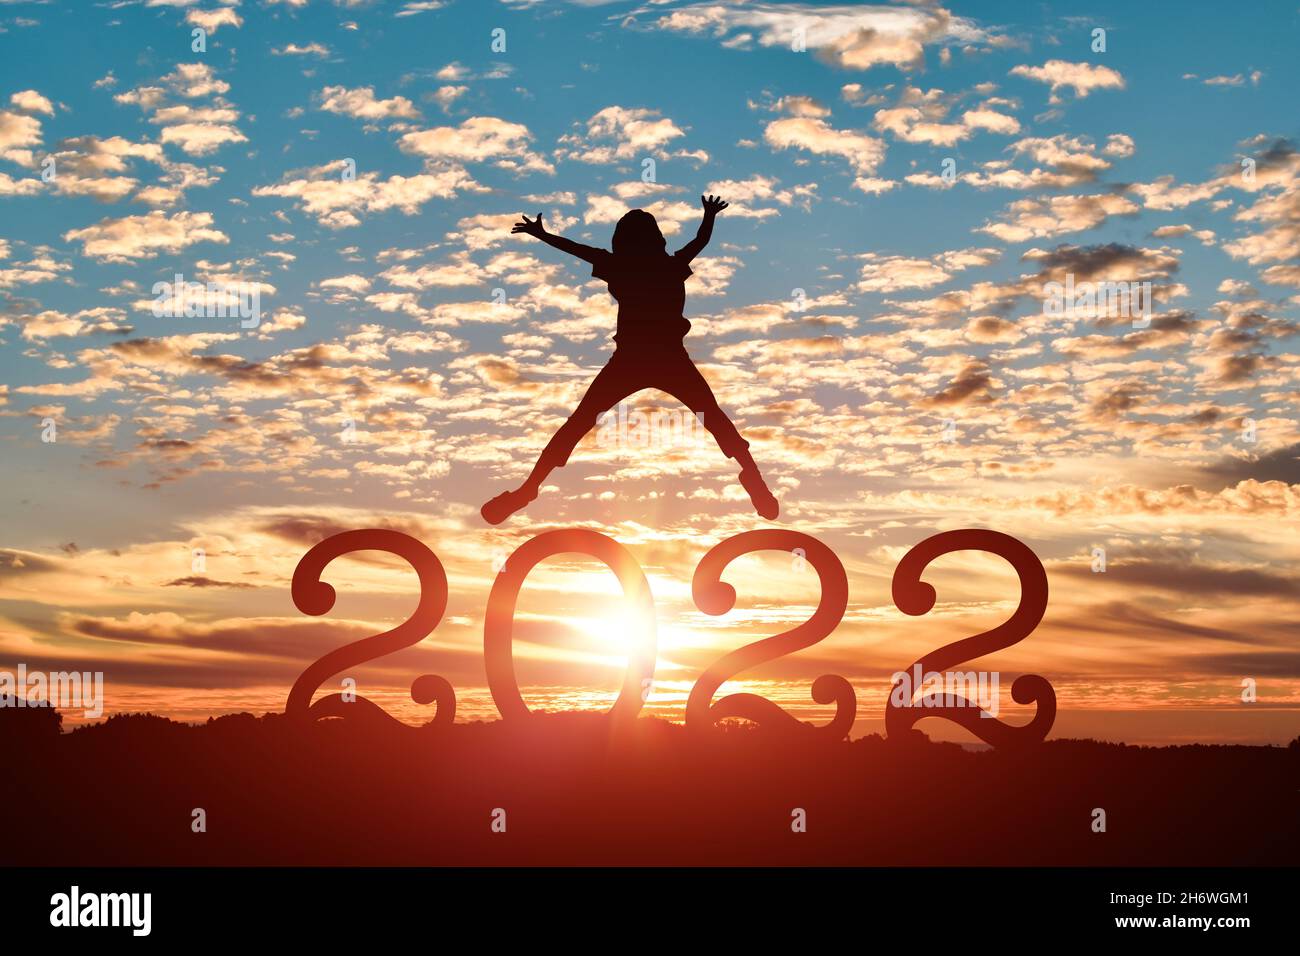 Silhouette einer jungen Frau, die im Hintergrund bei Sonnenuntergang oder Sonnenaufgang zum glücklichen neuen Jahr 2022 springt. Stockfoto